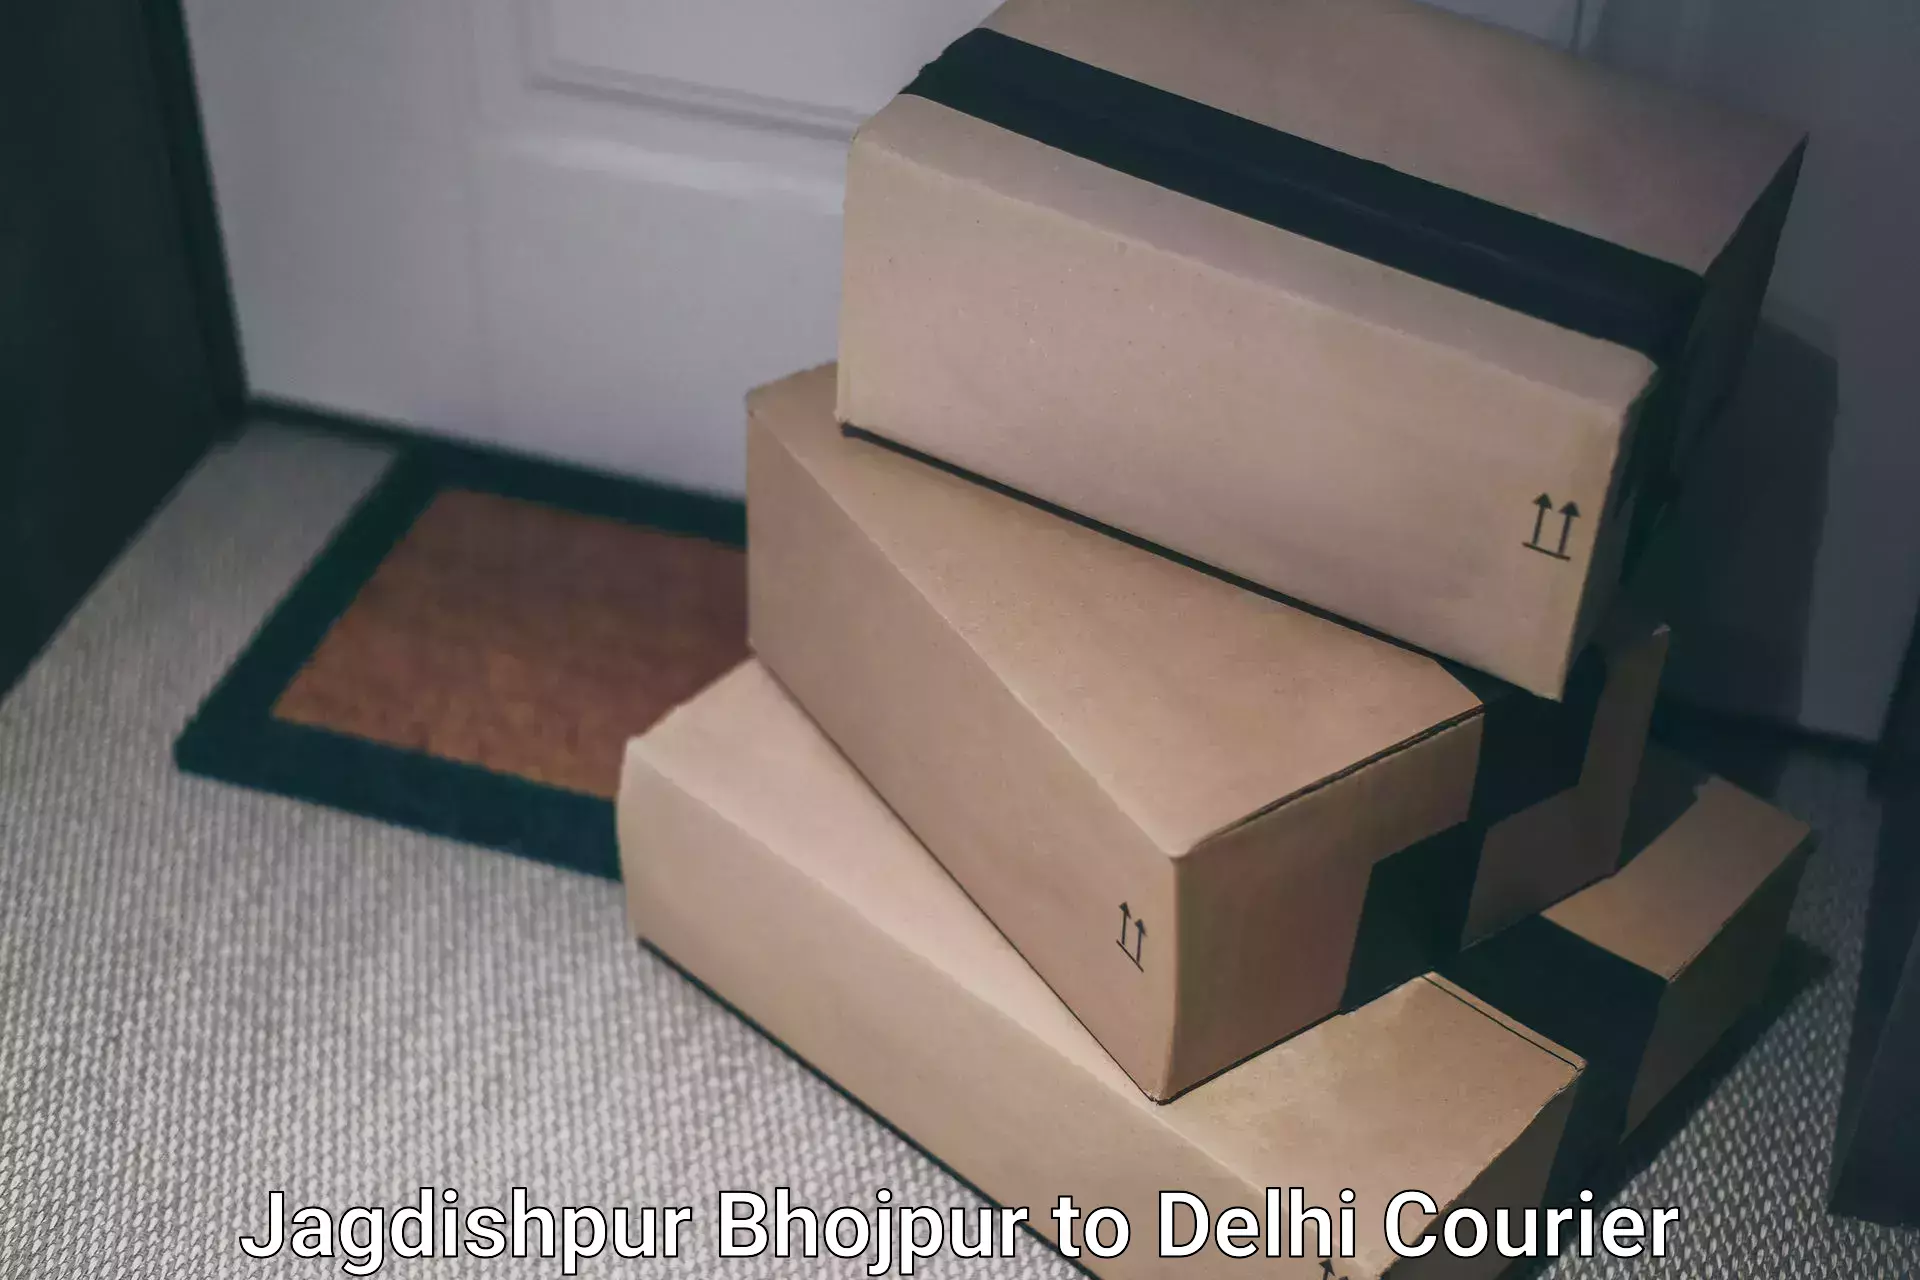 Smart logistics strategies Jagdishpur Bhojpur to Delhi